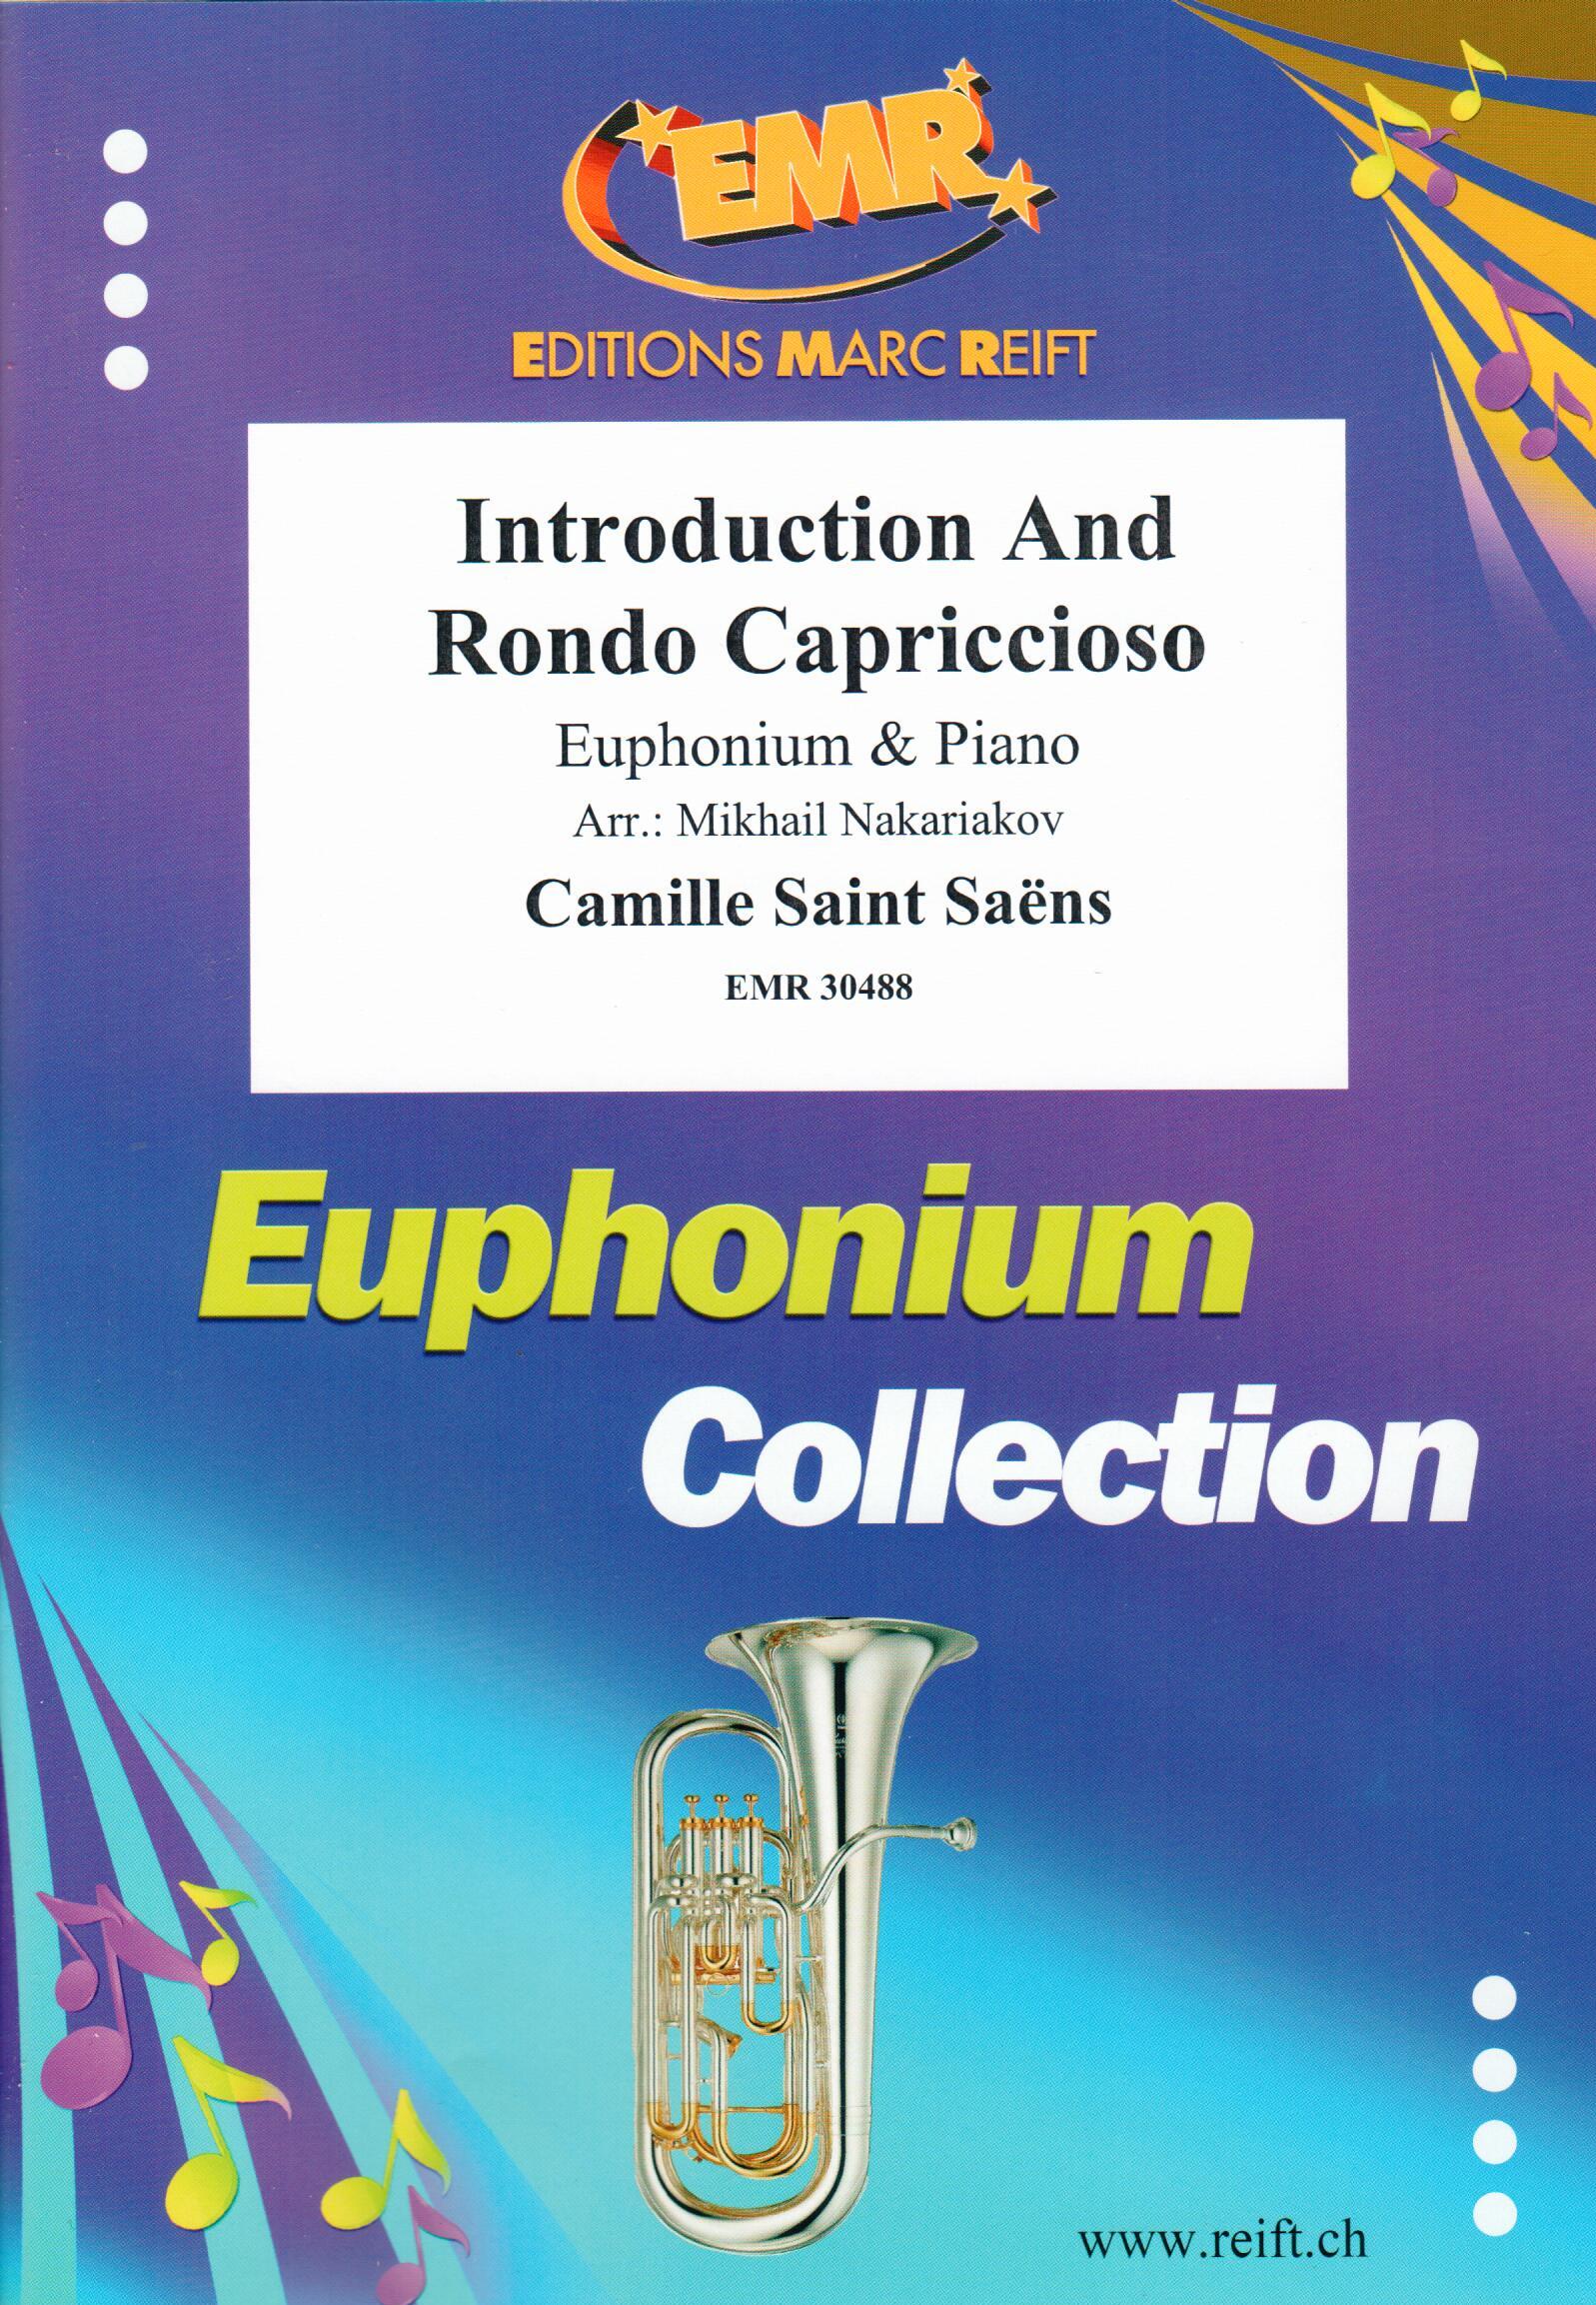 INTRODUCTION AND RONDO CAPRICCIOSO, SOLOS - Euphonium